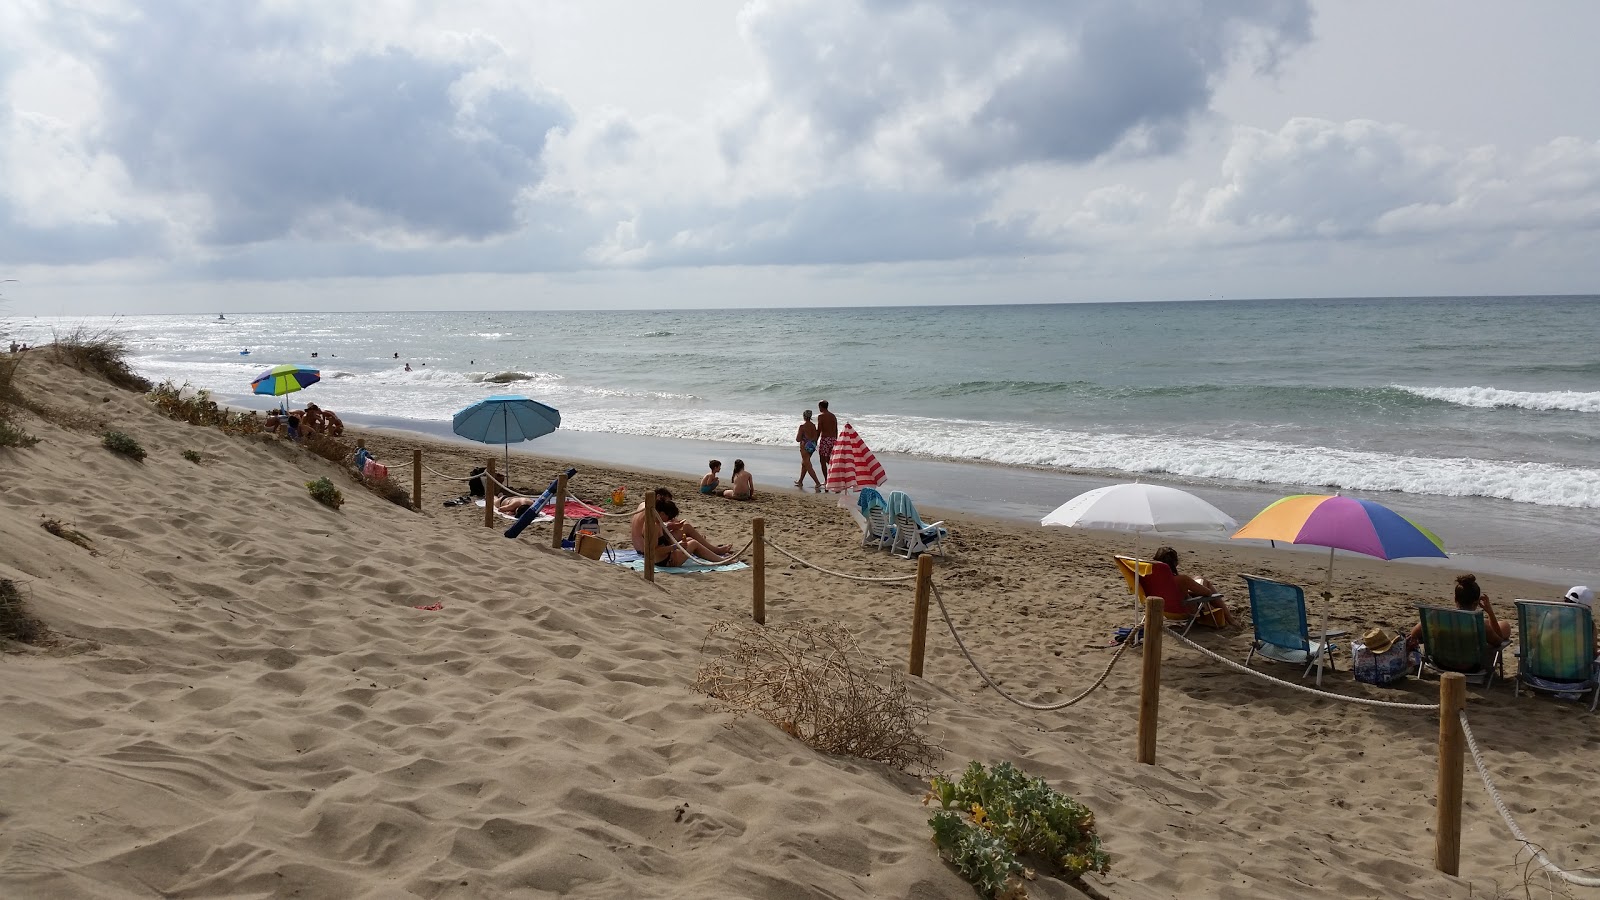 Playa de la Vibora'in fotoğrafı imkanlar alanı